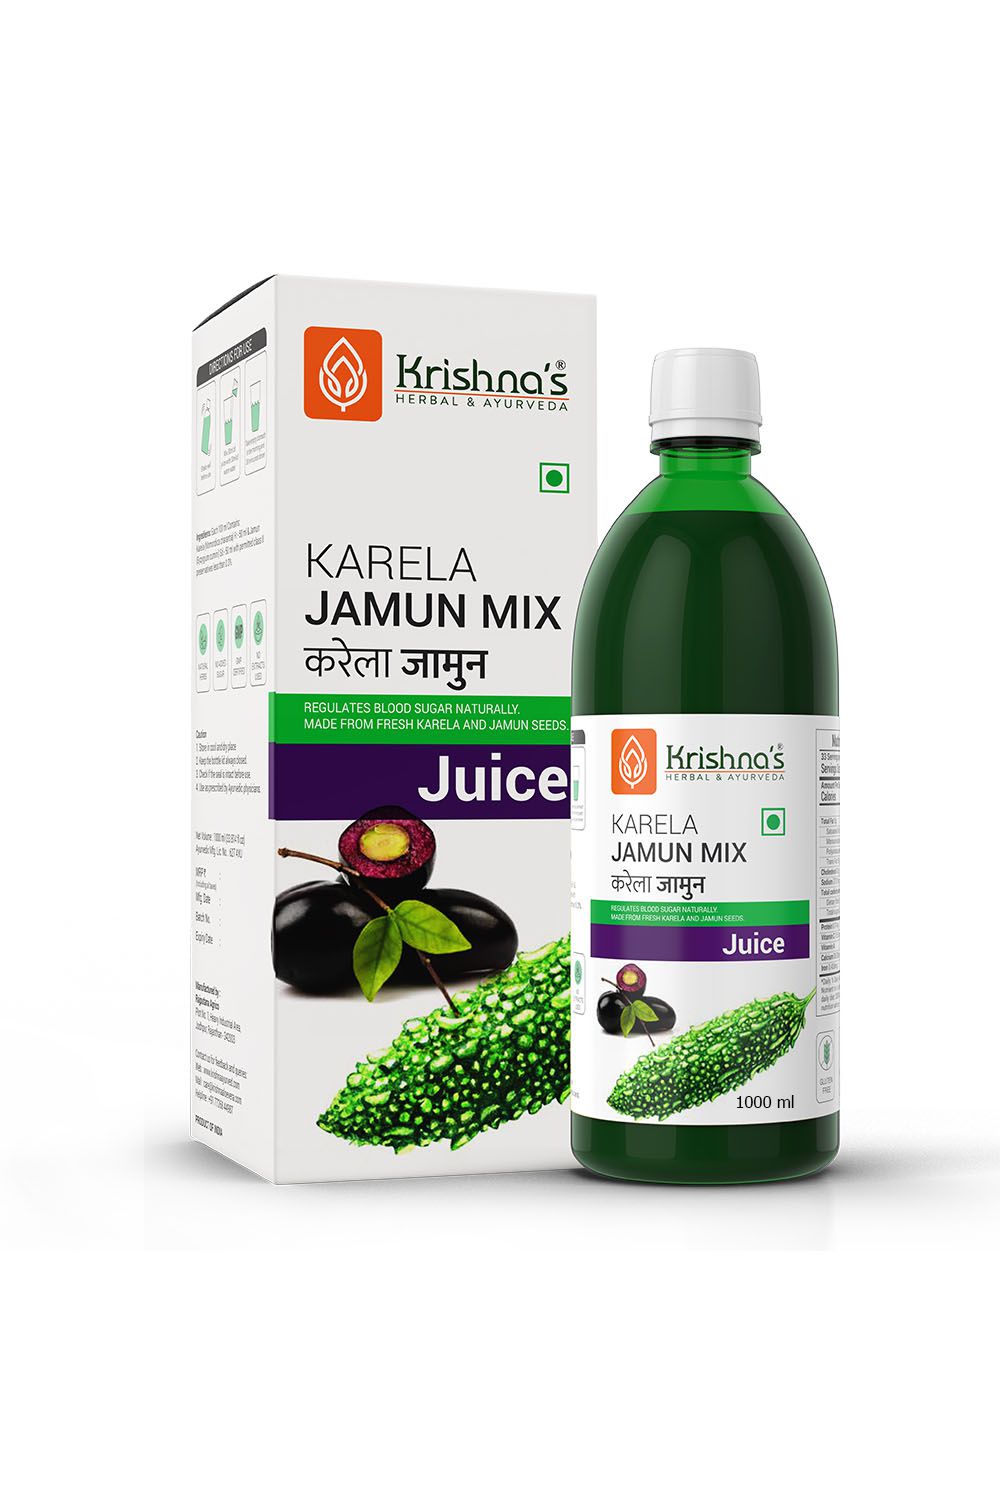     			Krishna's Herbal & Ayurveda Karela Jamun Mix Juice 1000ml